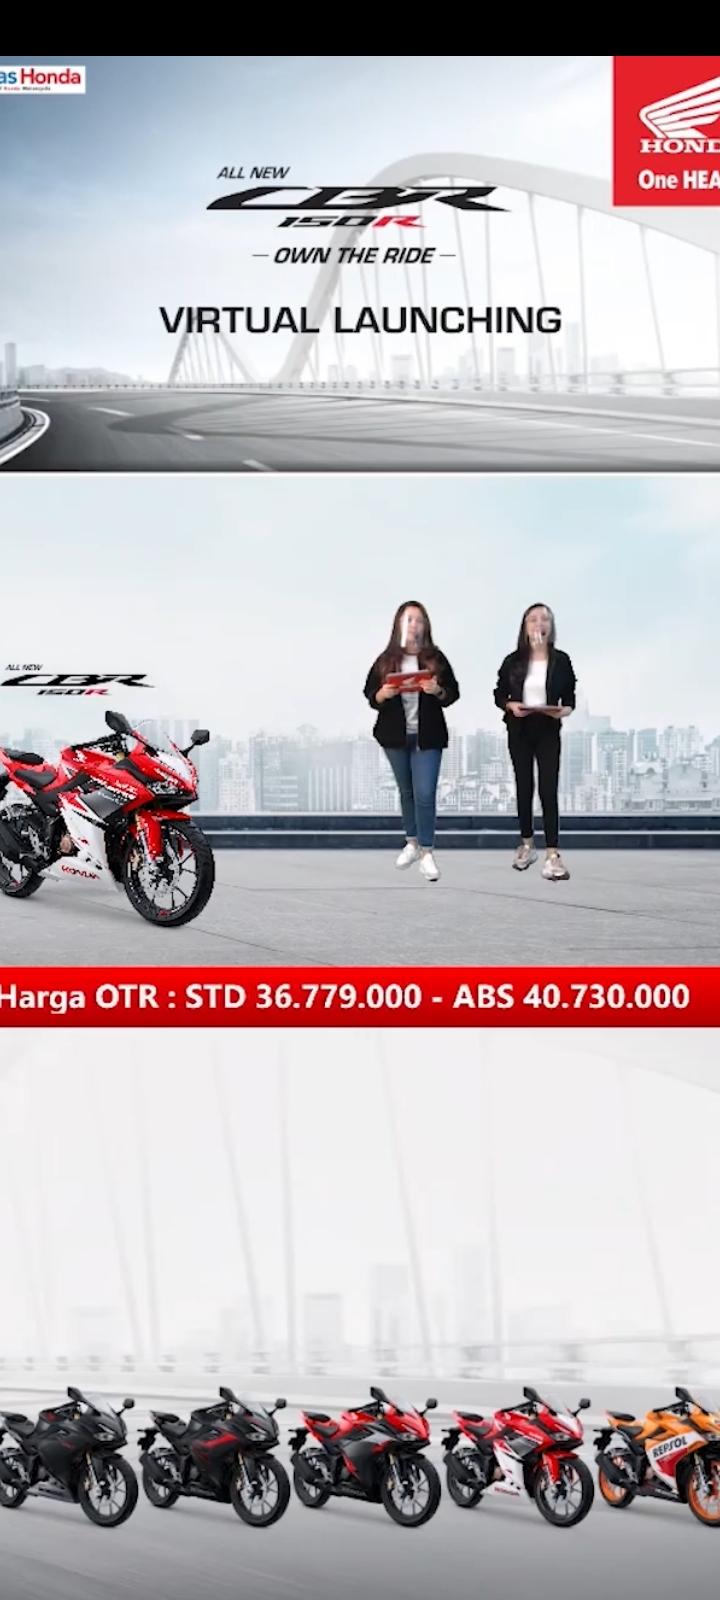 Tunas Honda Hadirkan All New Honda CBR 150R di Lampung Secara Virtual 